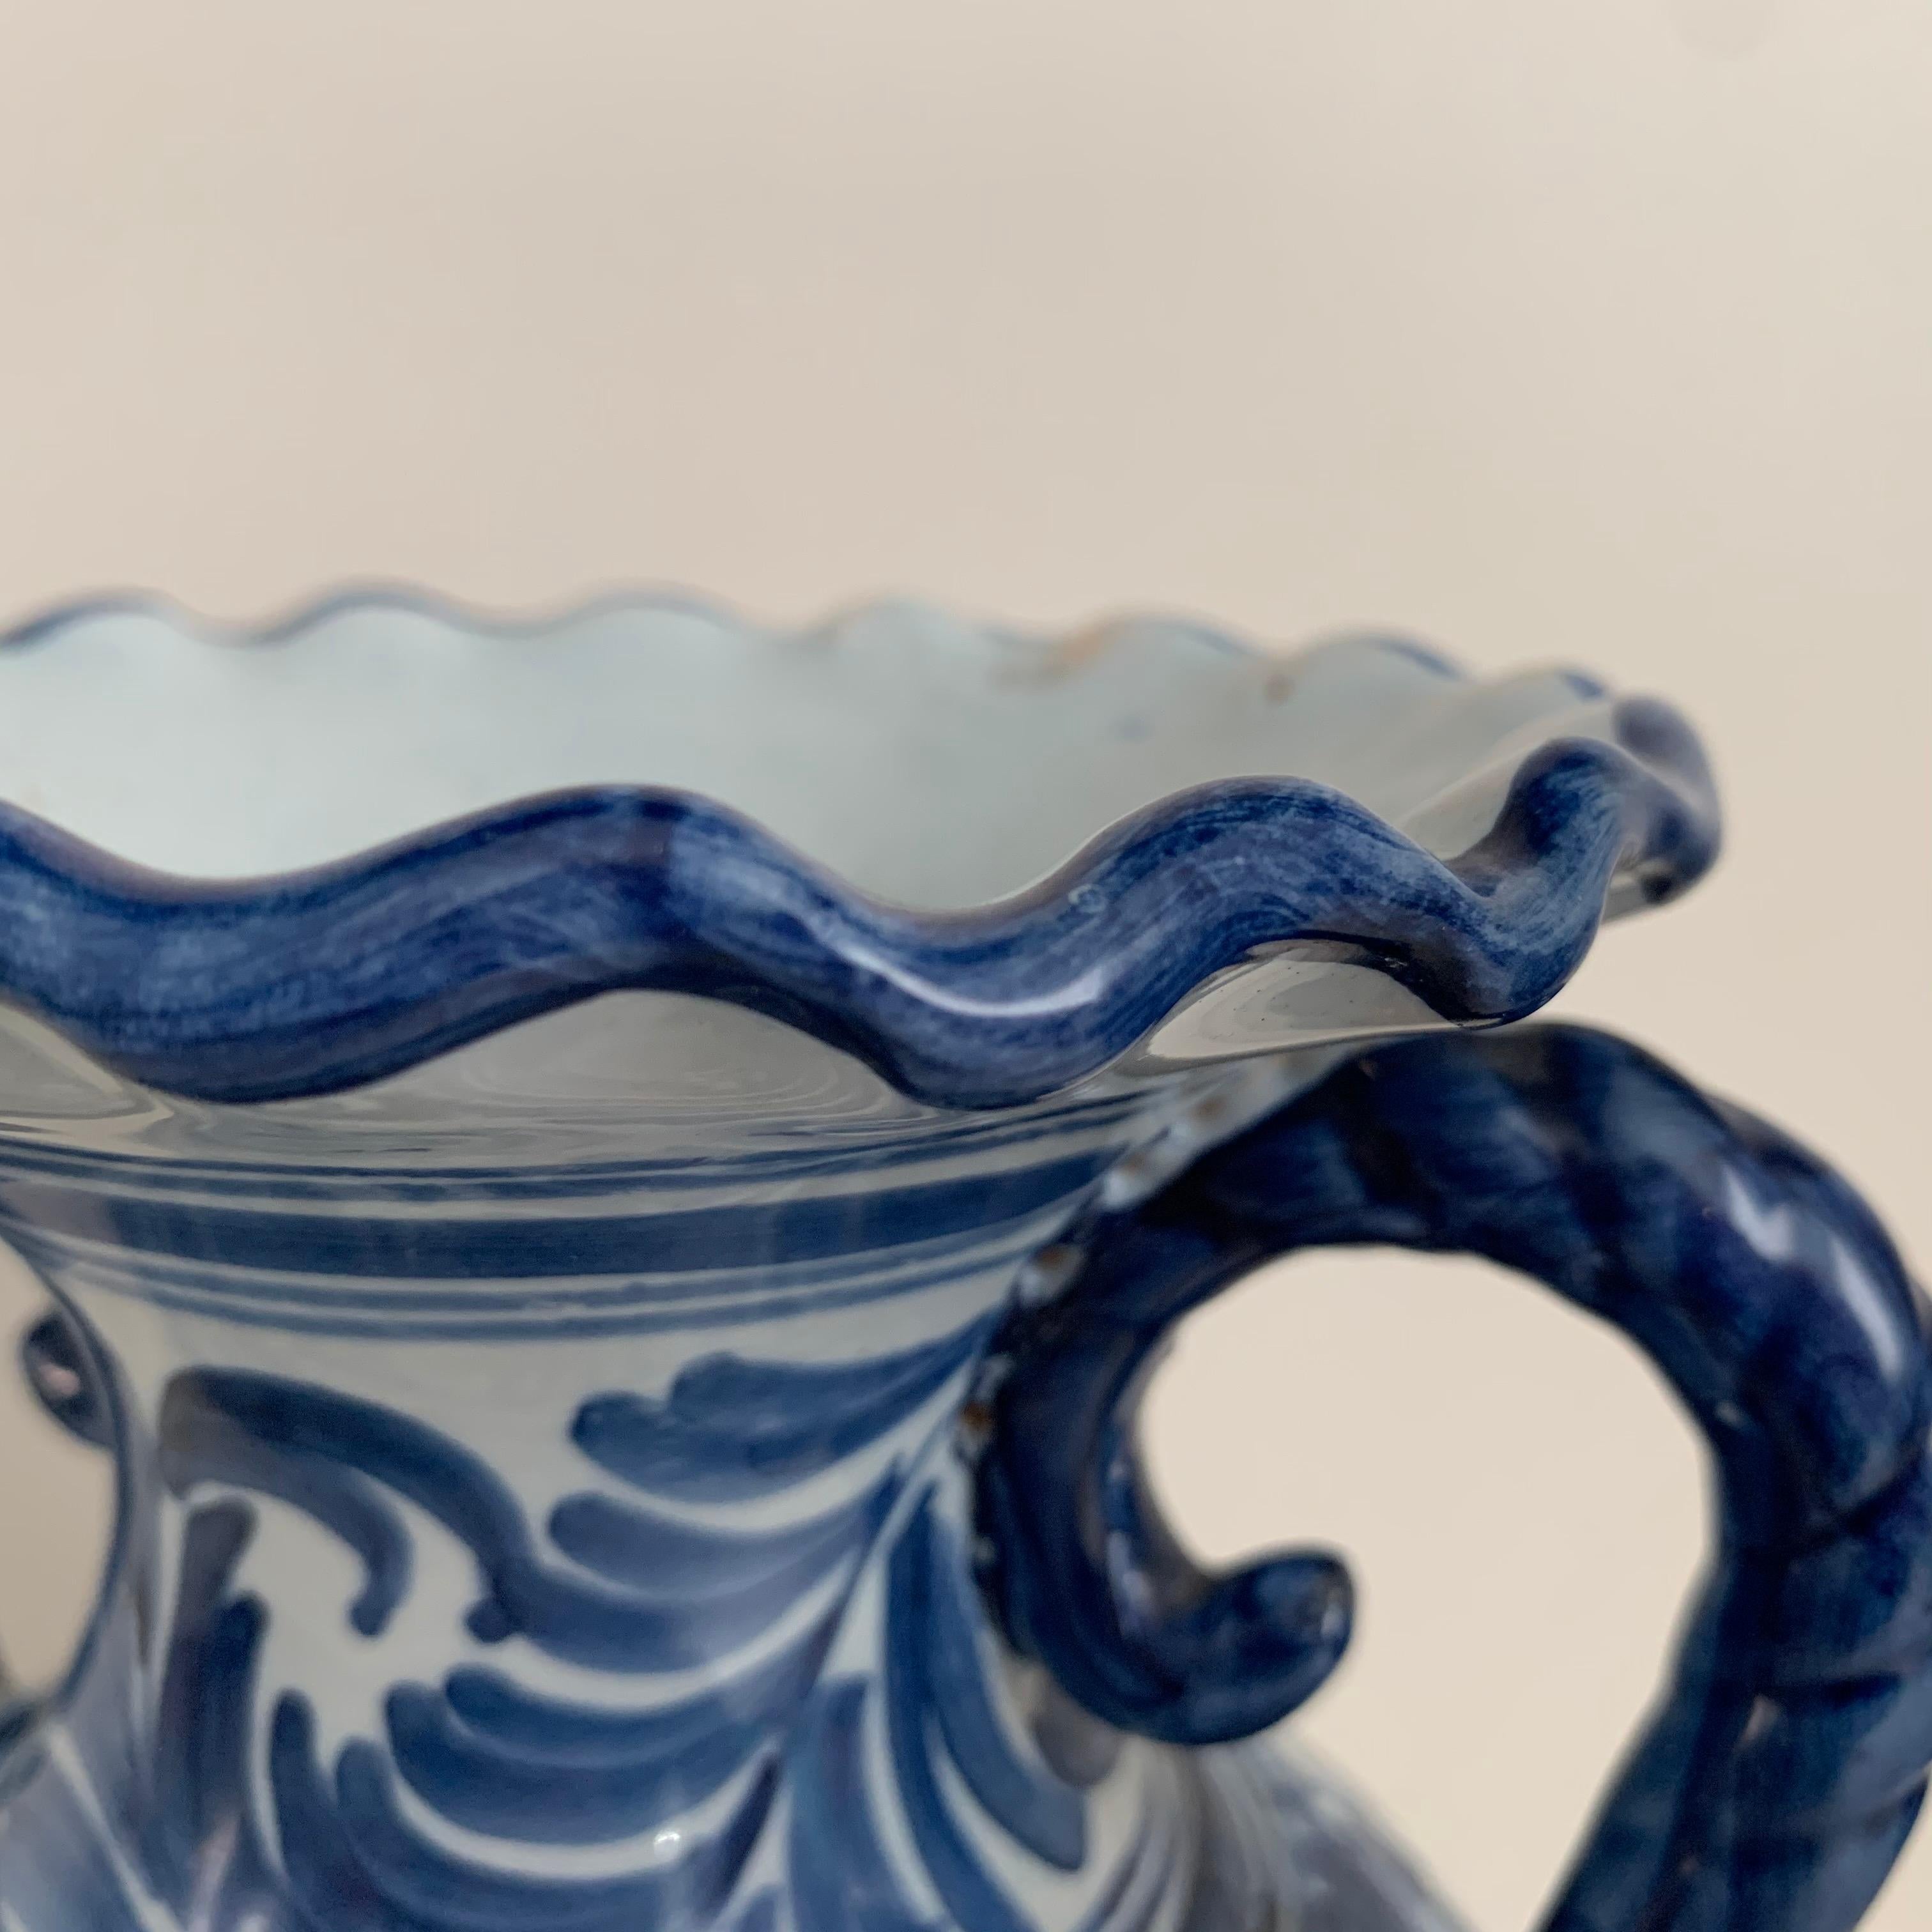 Ceramic 20th Century Glazed Earthenware Spanish Blue and White Painted Urn, Vase